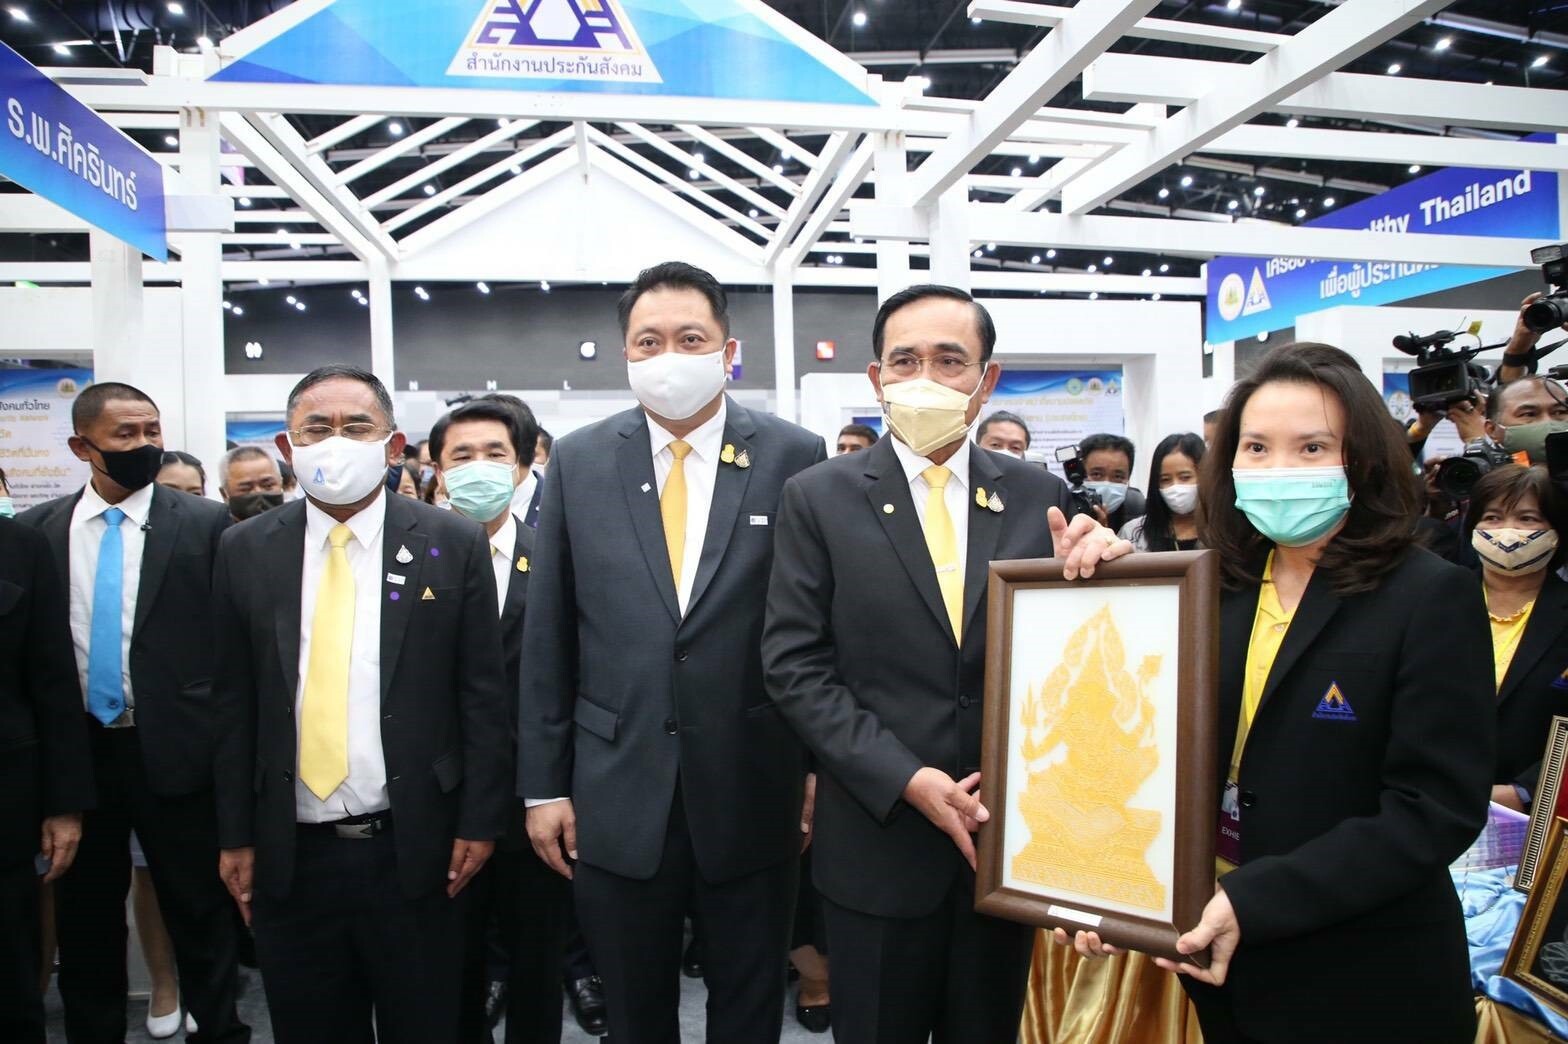 นายกรัฐมนตรี ร่วมงานพิธีคิกออฟ Healthy Thailand เพื่อผู้ประกันตนกลุ่มผู้สูงอายุ รับวัคซีนป้องกันไข้หวัดใหญ่ ฟรีปีละครั้ง